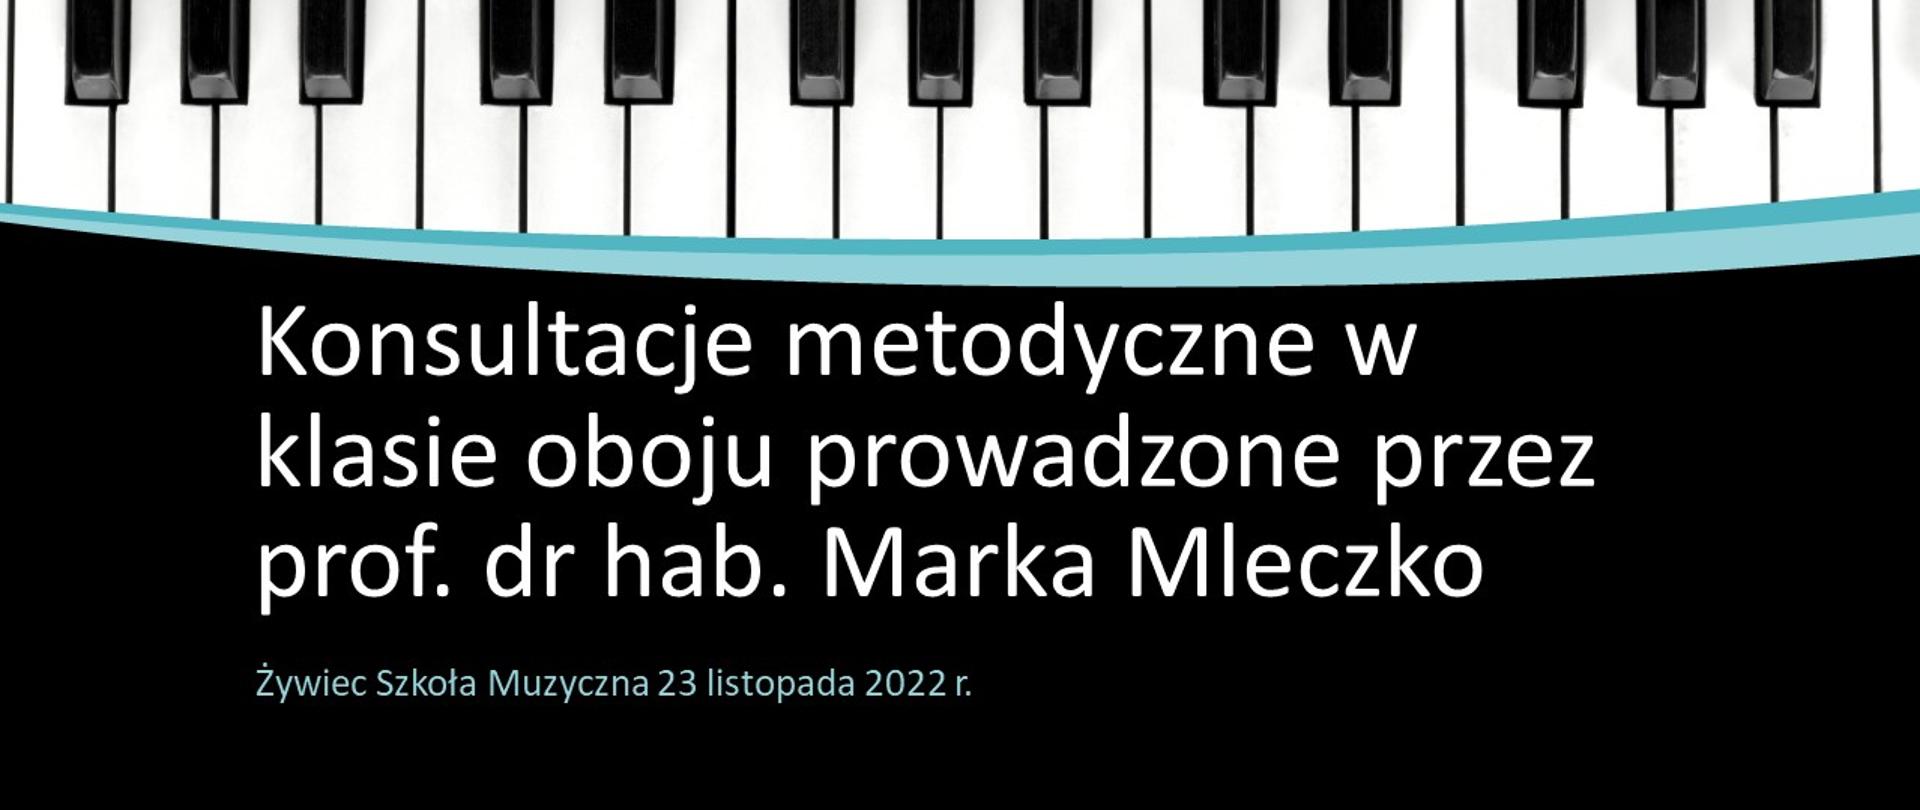 Plakat, czarne tło na dole z napisem: "Konsultacje metodyczne w klasie oboju prowadzone przez prof. dr hab. Marka Mleczko, Żywiec Szkołą Muzyczna 23 listopada 2023", na górze tło z obrazem klawiatury pianina